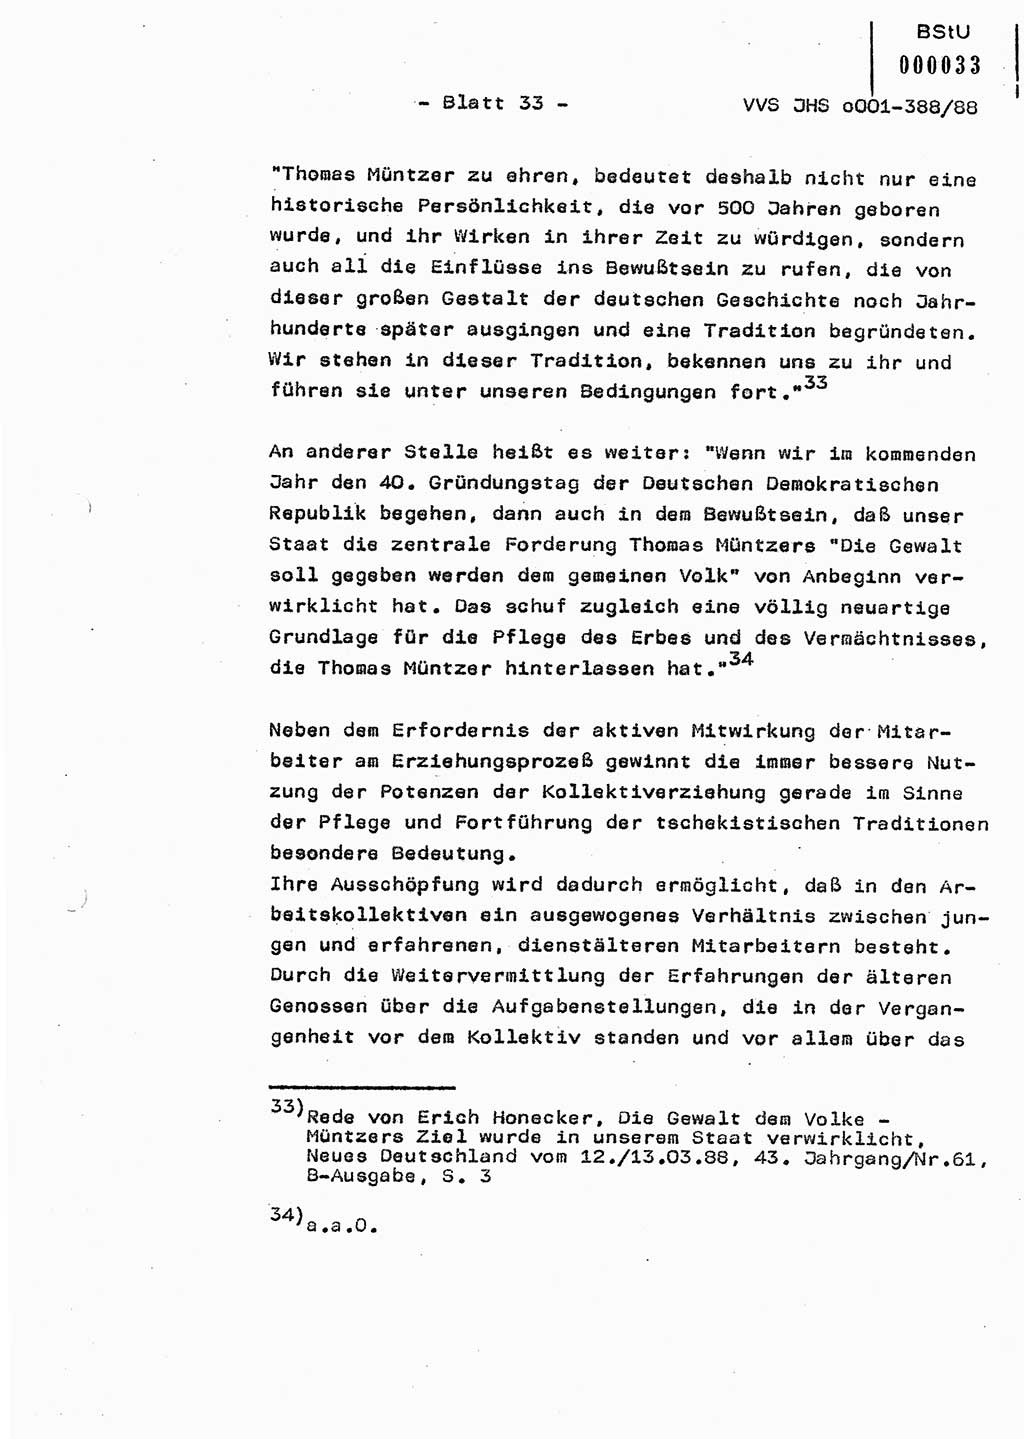 Diplomarbeit Hauptmann Heinz Brixel (Abt. ⅩⅣ), Ministerium für Staatssicherheit (MfS) [Deutsche Demokratische Republik (DDR)], Juristische Hochschule (JHS), Vertrauliche Verschlußsache (VVS) o001-388/88, Potsdam 1988, Blatt 33 (Dipl.-Arb. MfS DDR JHS VVS o001-388/88 1988, Bl. 33)